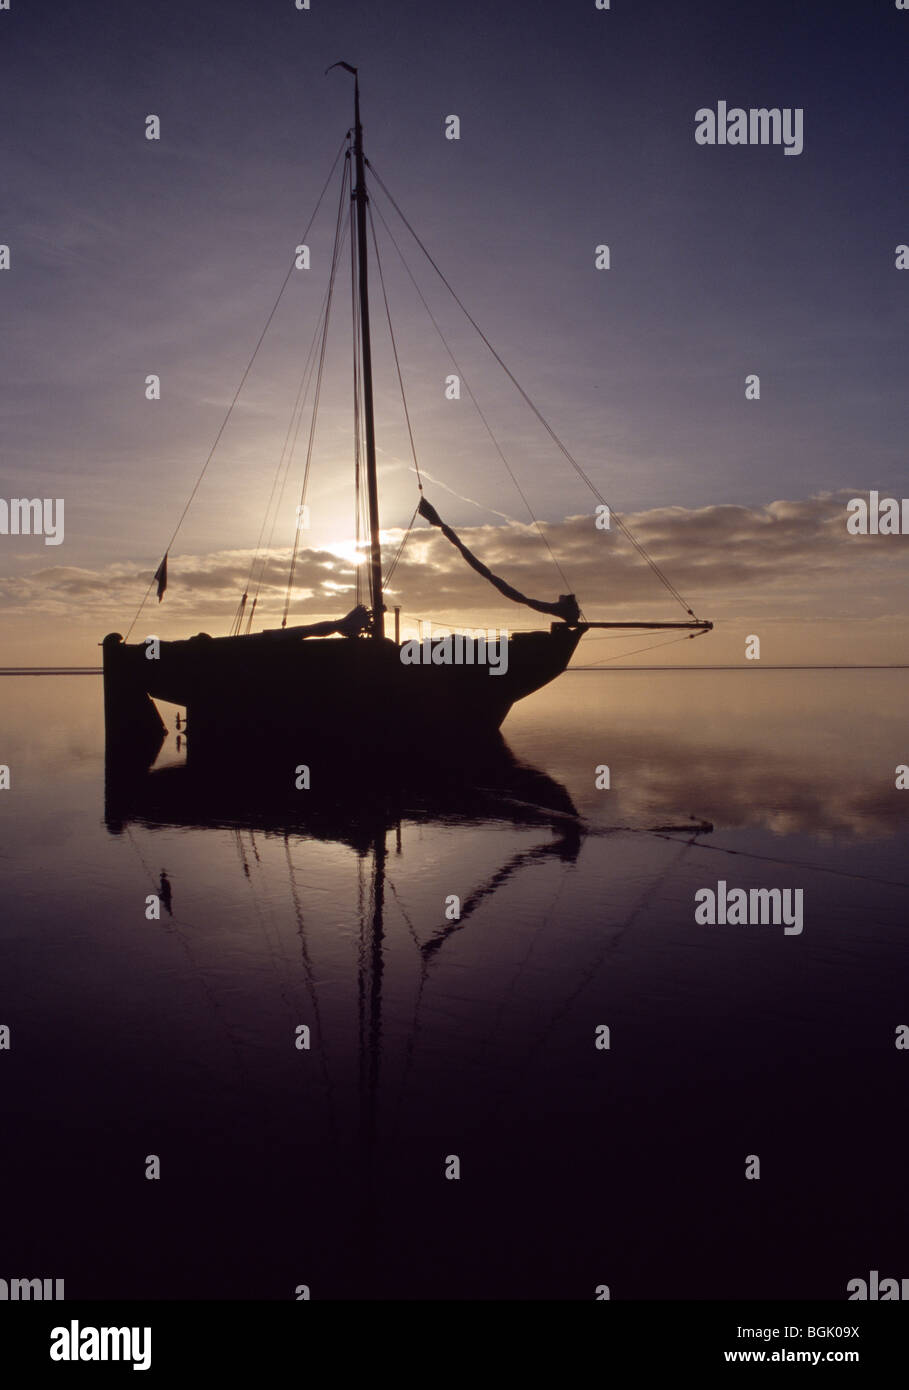 Insel Vlieland, Wattenmeer, Wattenmeer, Naturlandschaft. Segelschiff trocken gefallen. Stock Photo